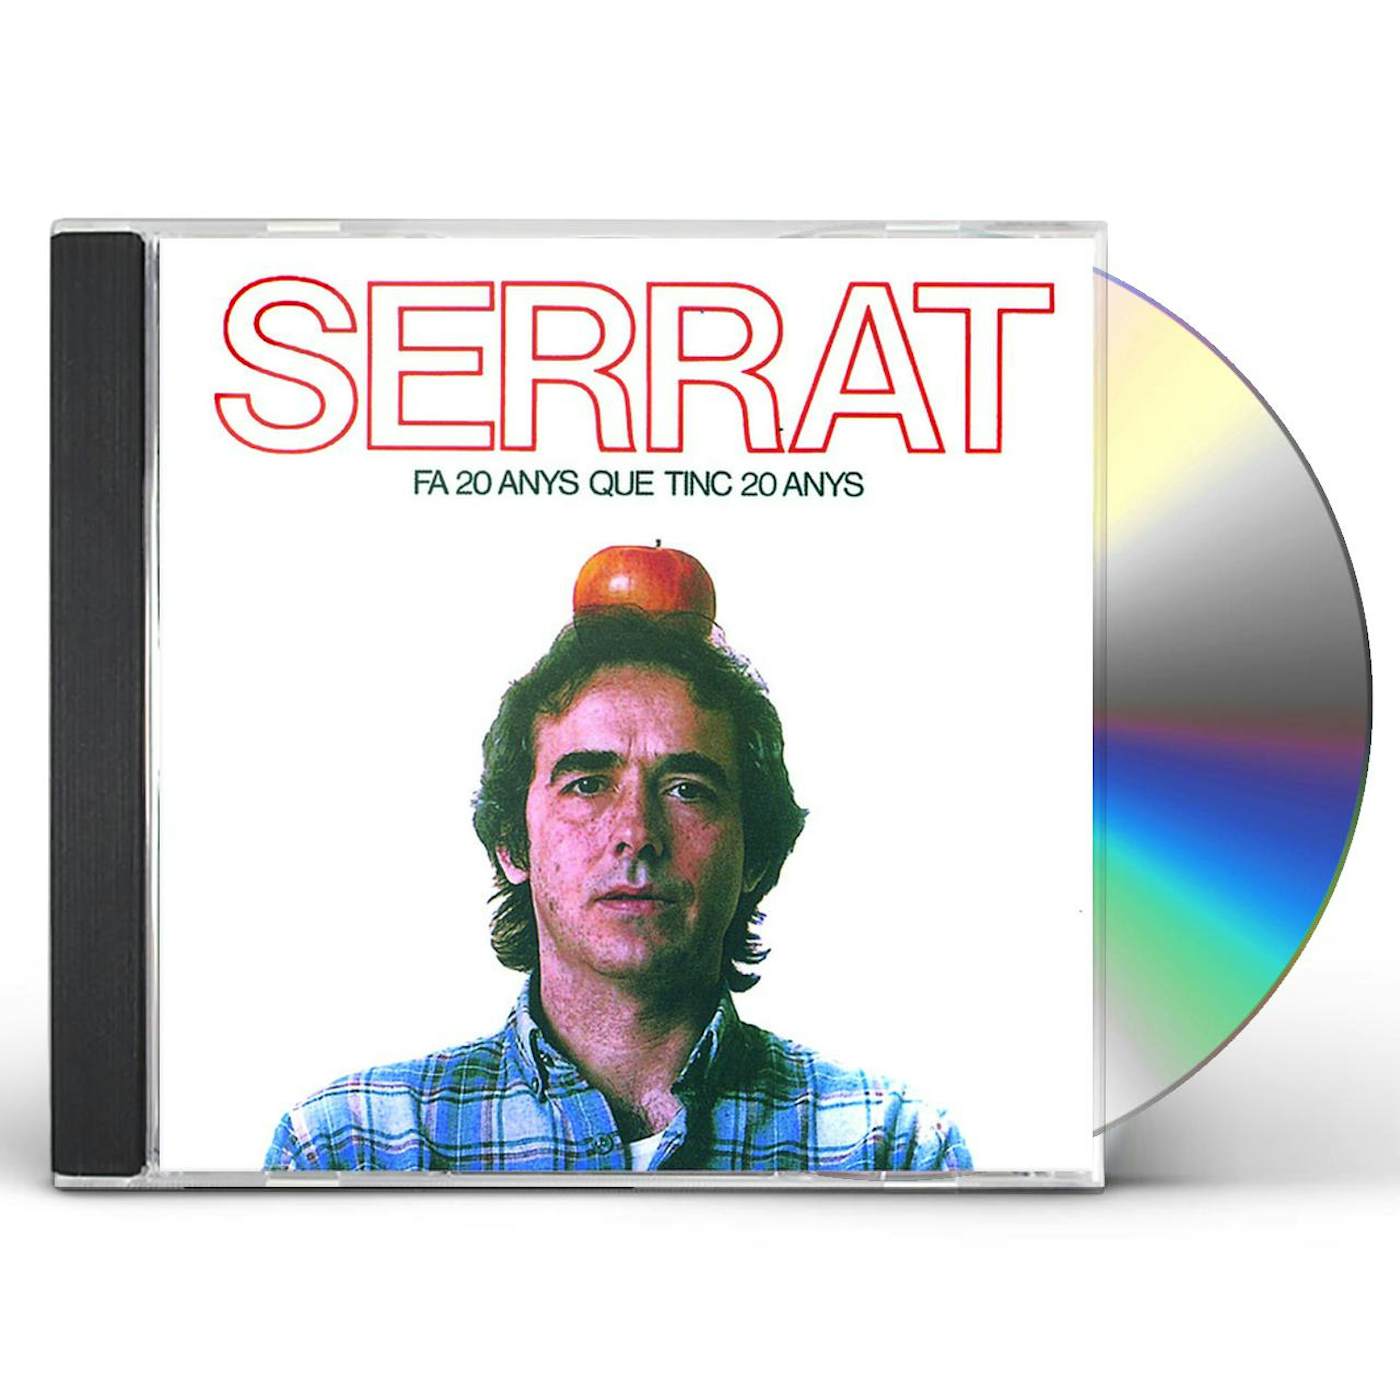 Joan Manuel Serrat FA VINT ANYS QUE TINC VINT ANYS CD